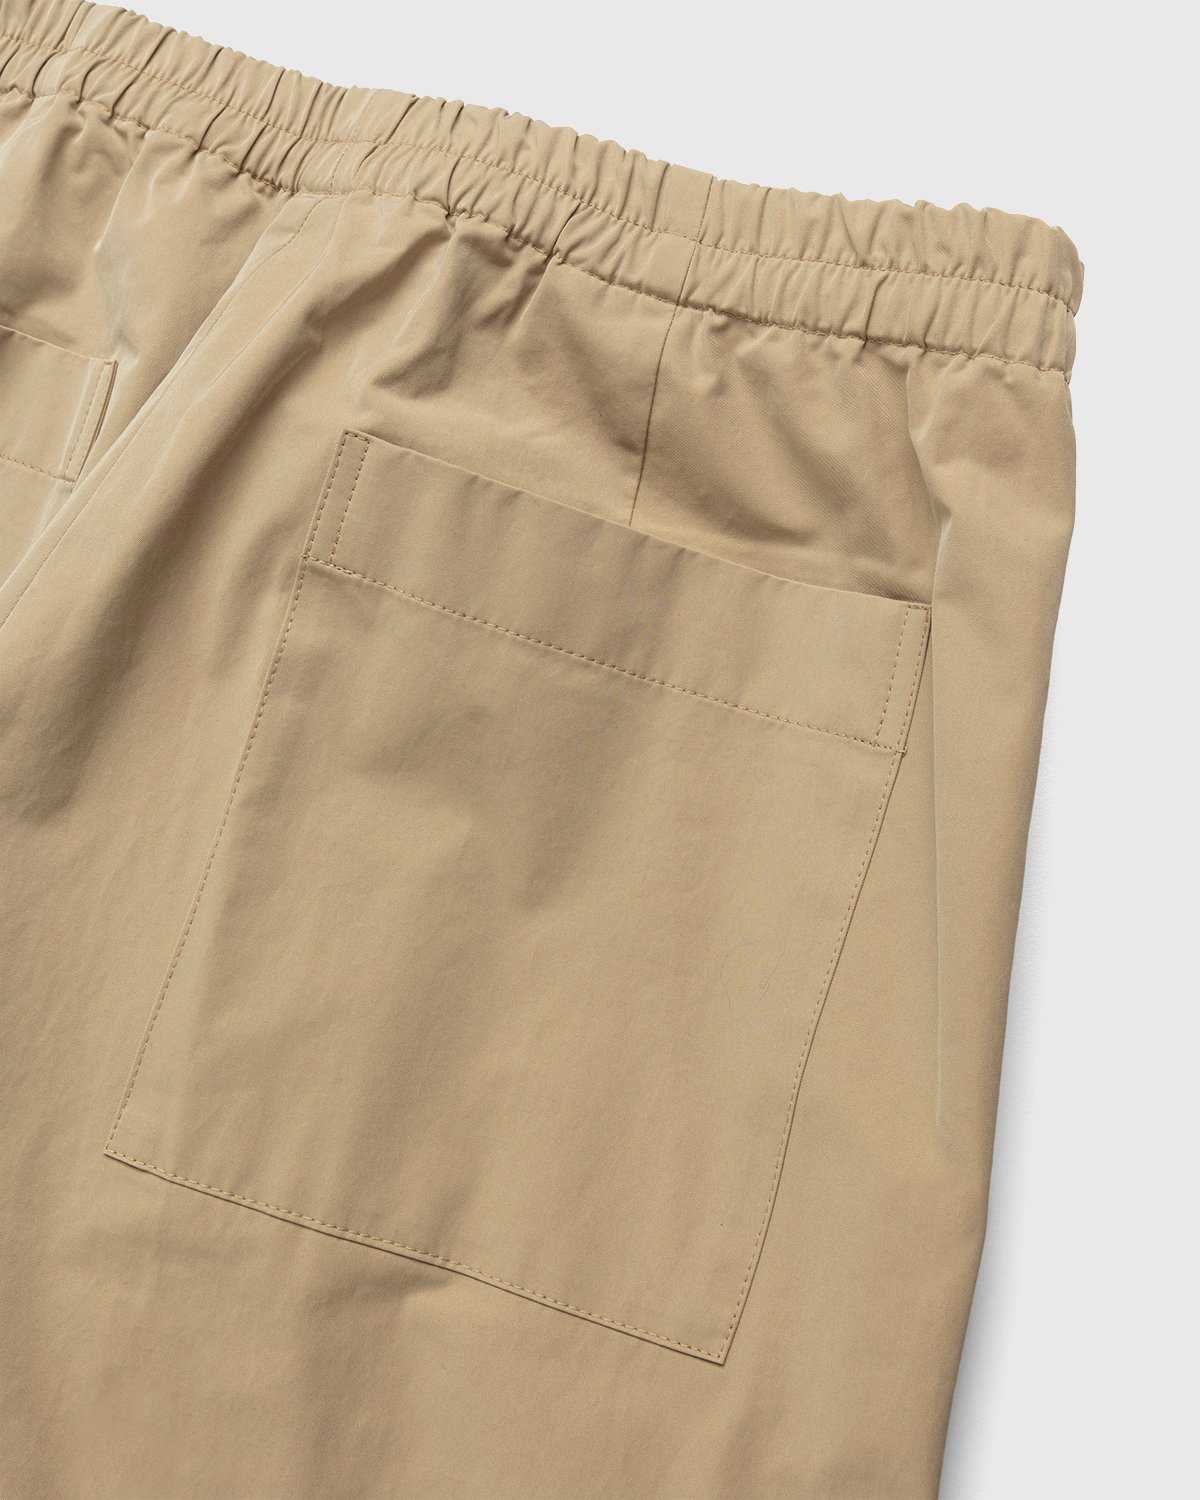 Dries van Noten - Palmer Tape Pants Beige - Clothing - Beige - Image 6